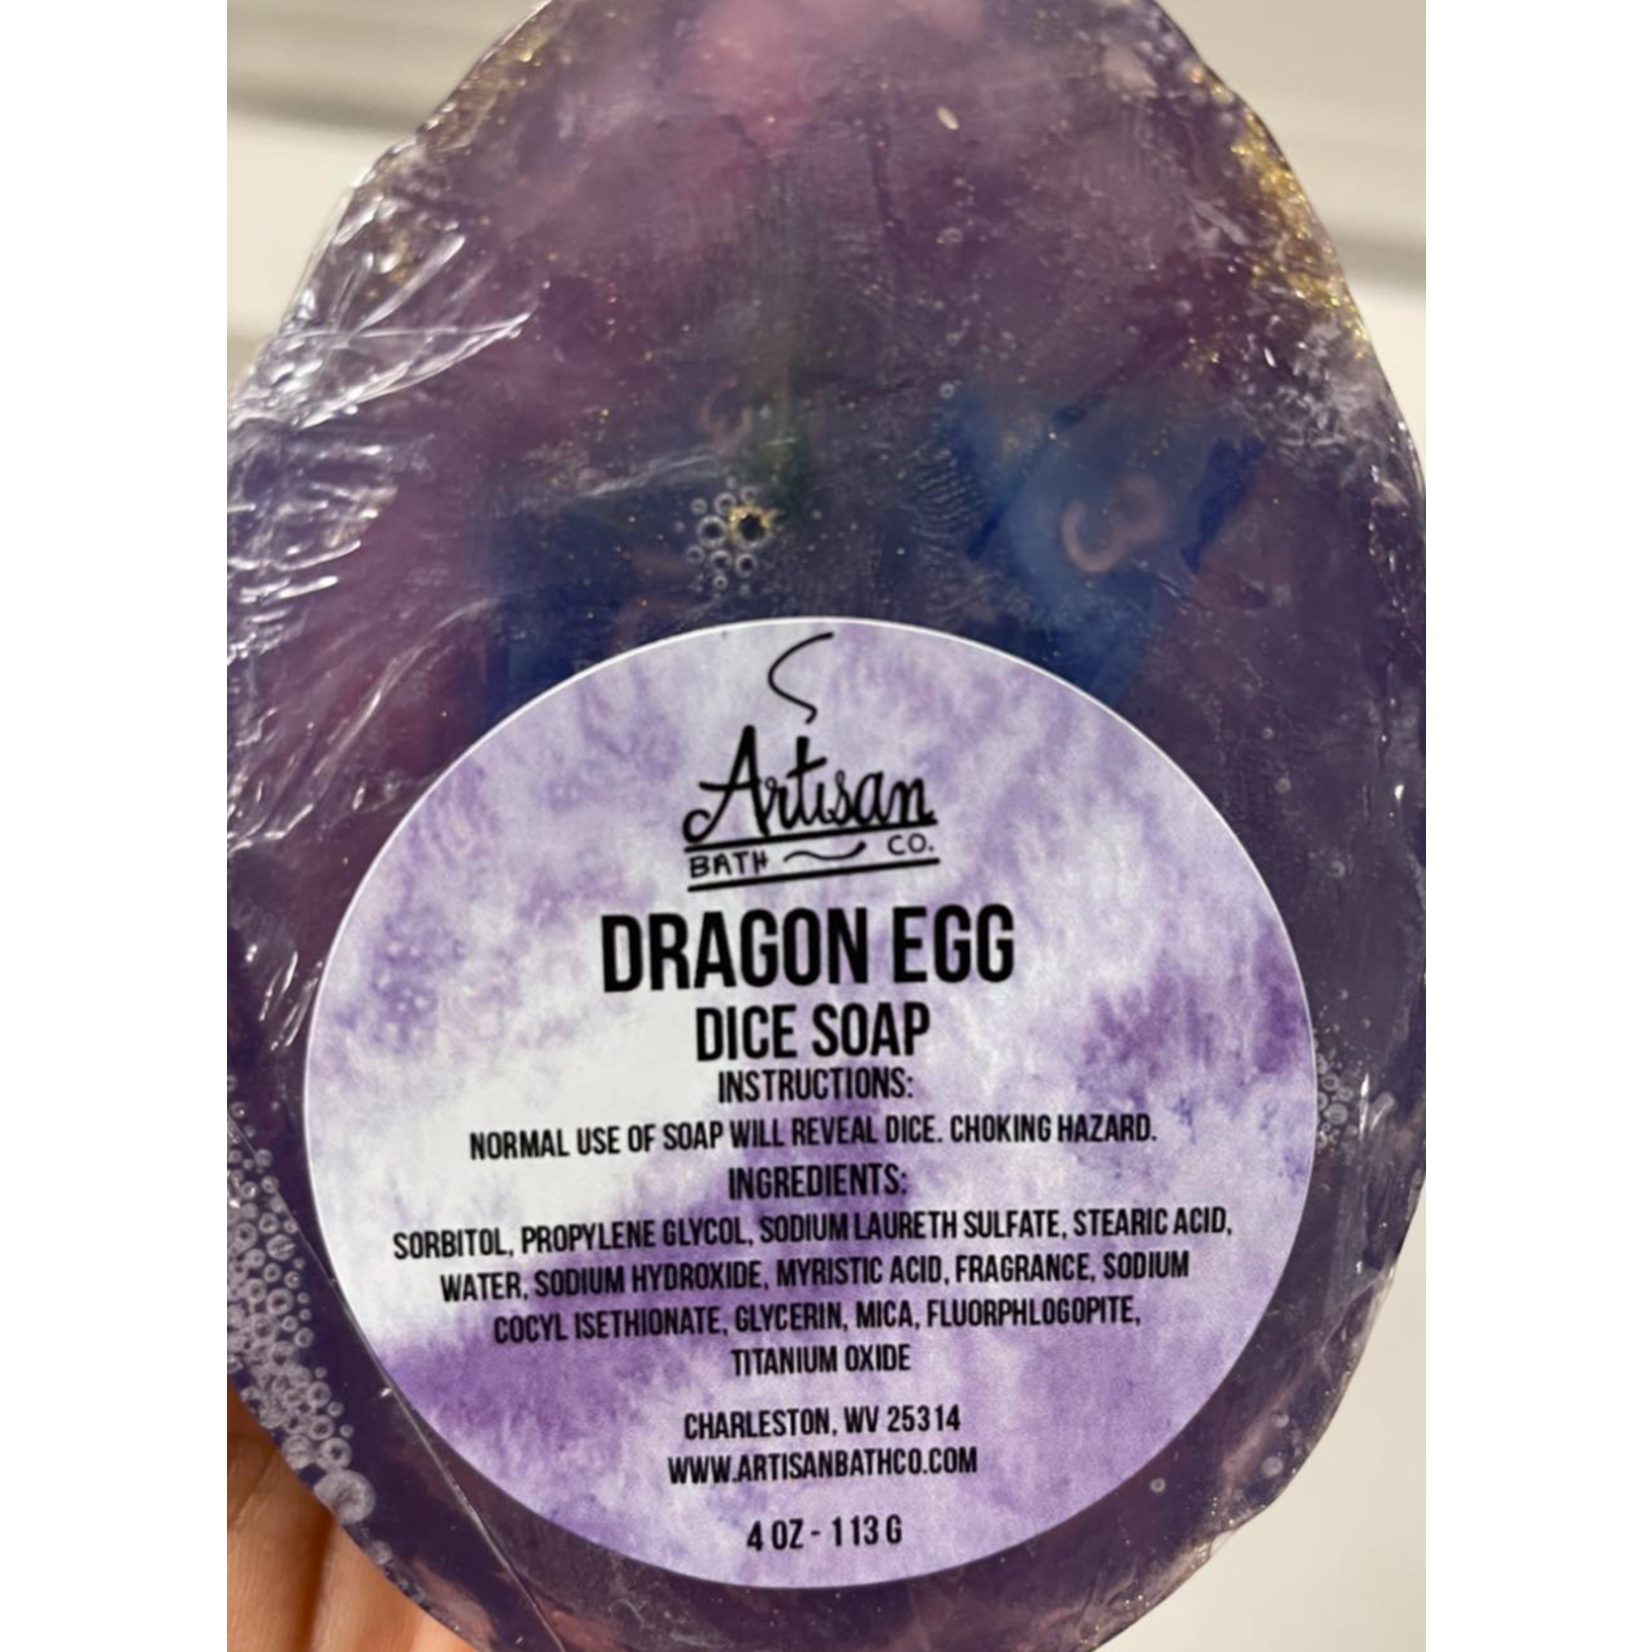 Artisan Bath Co. Dice Soap: Dragon Egg (Purple with 7-Piece Dice Set Inside)